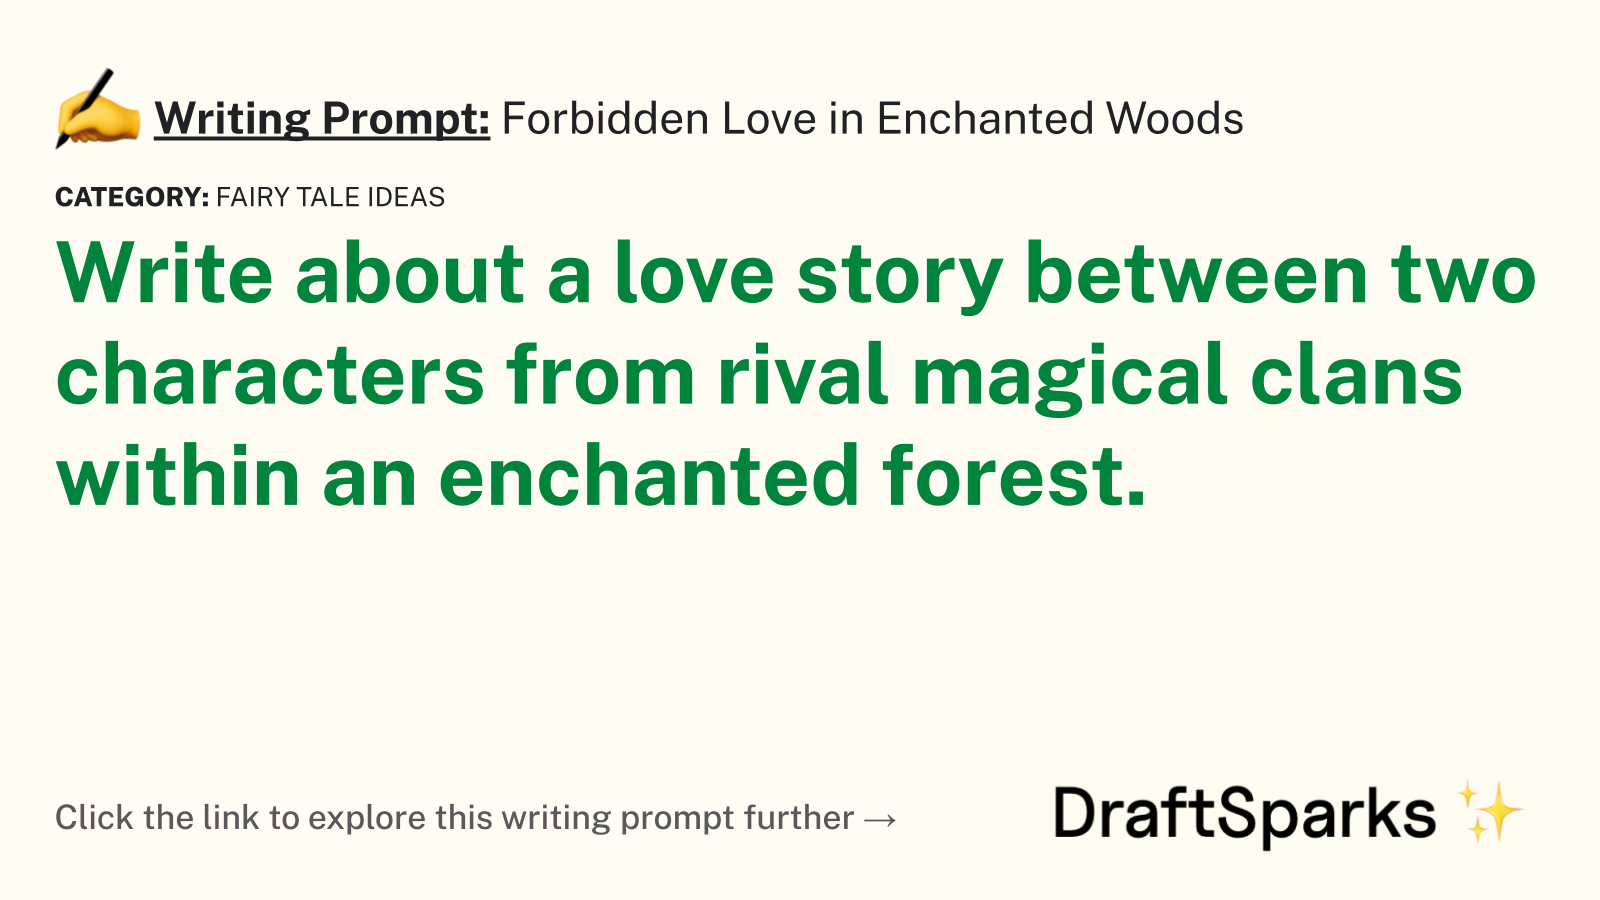 Forbidden Love in Enchanted Woods